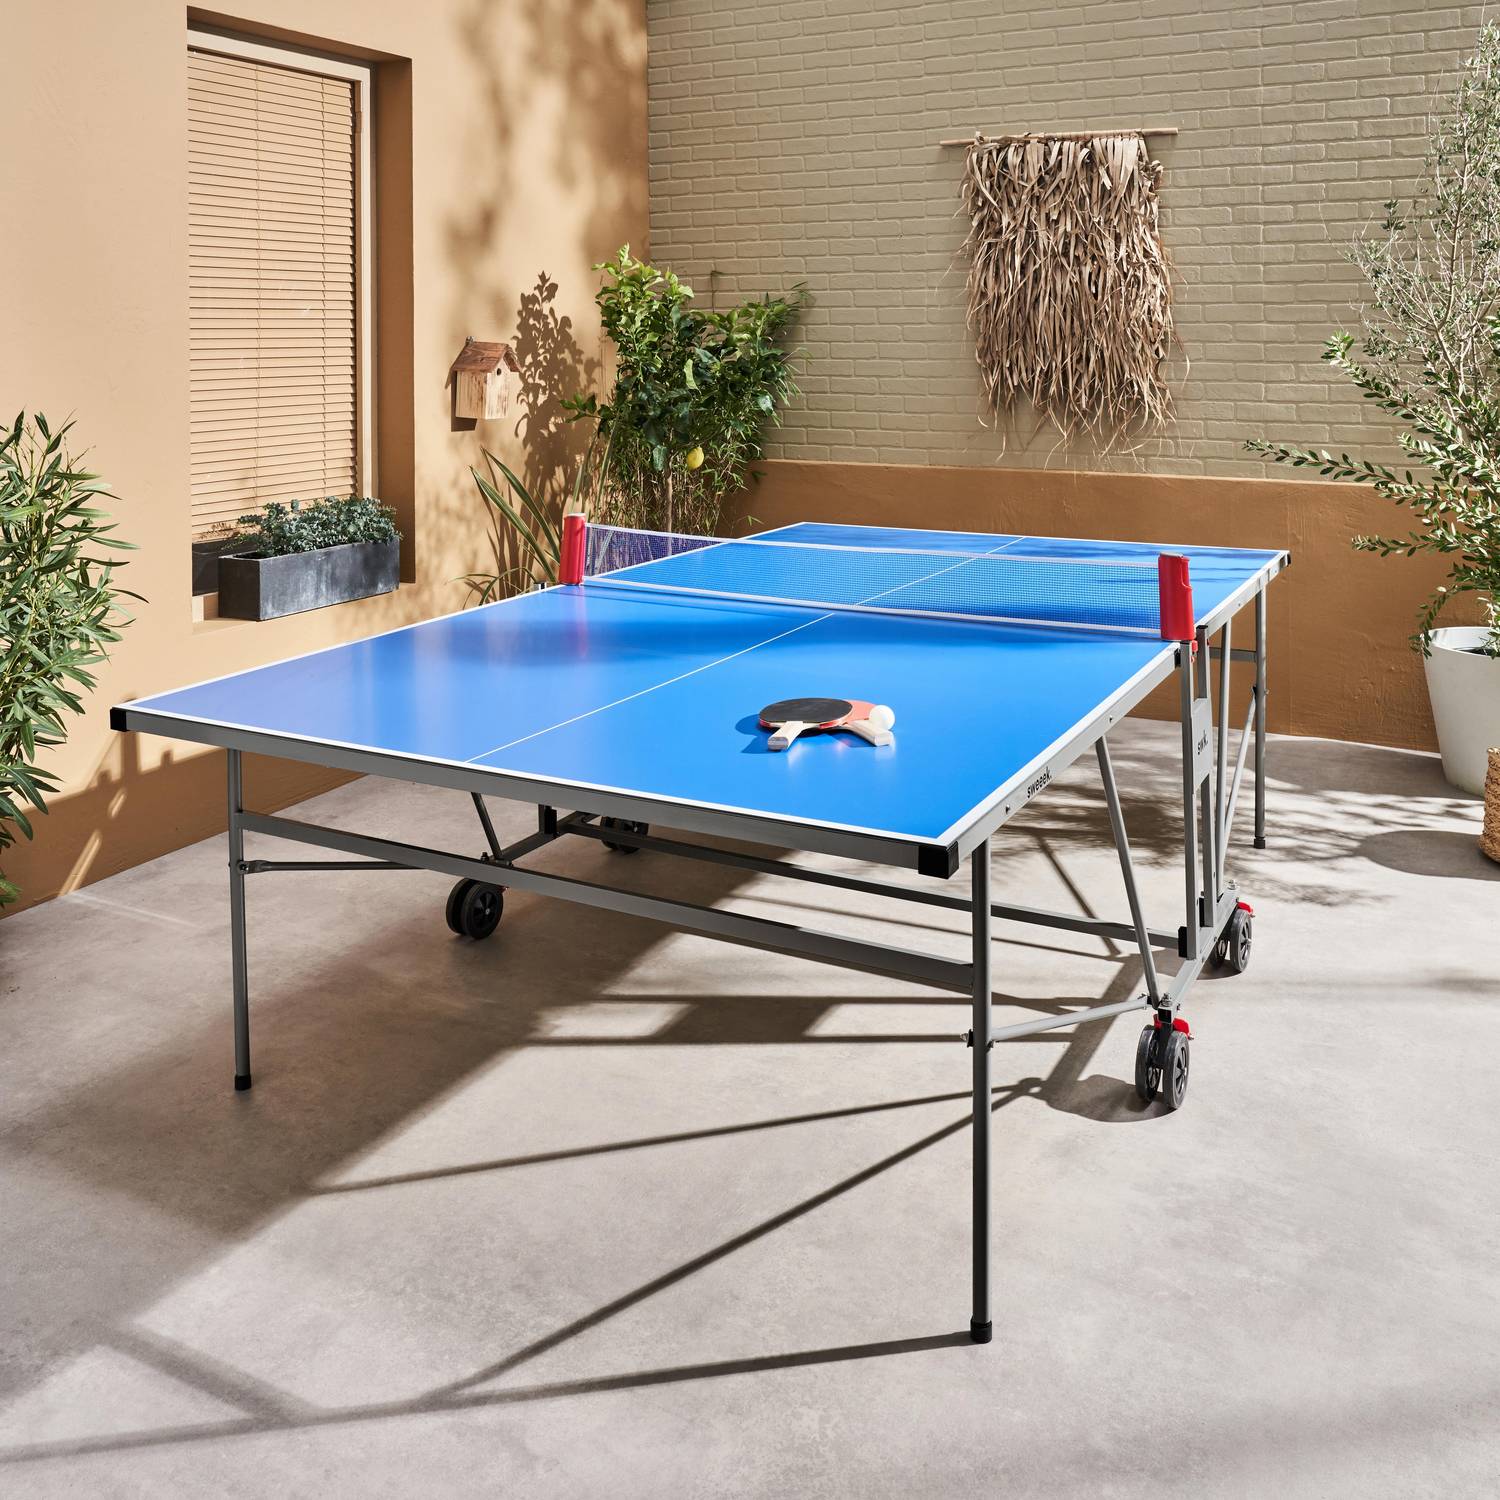 Table de ping pong INDOOR bleue - table pliable avec 4 raquettes et 6 balles, pour utilisation intérieure, sport tennis de table Photo1